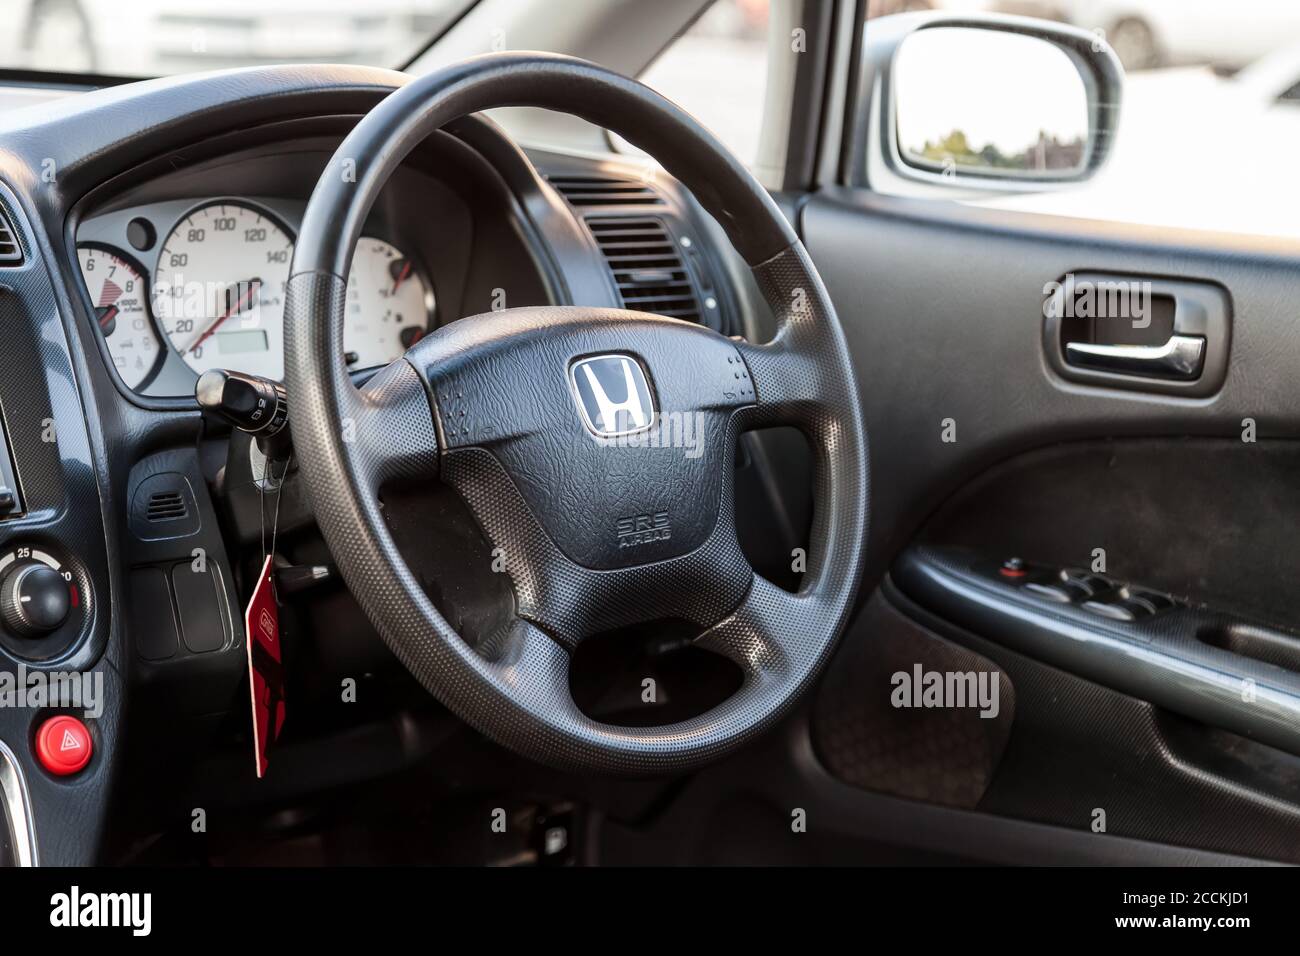 Novosibirsk, Russia - 08.05.20: L'interno di una vecchia vettura giapponese  Honda Stream con vista sul cruscotto, volante, tachimetro e logo wi Foto  stock - Alamy